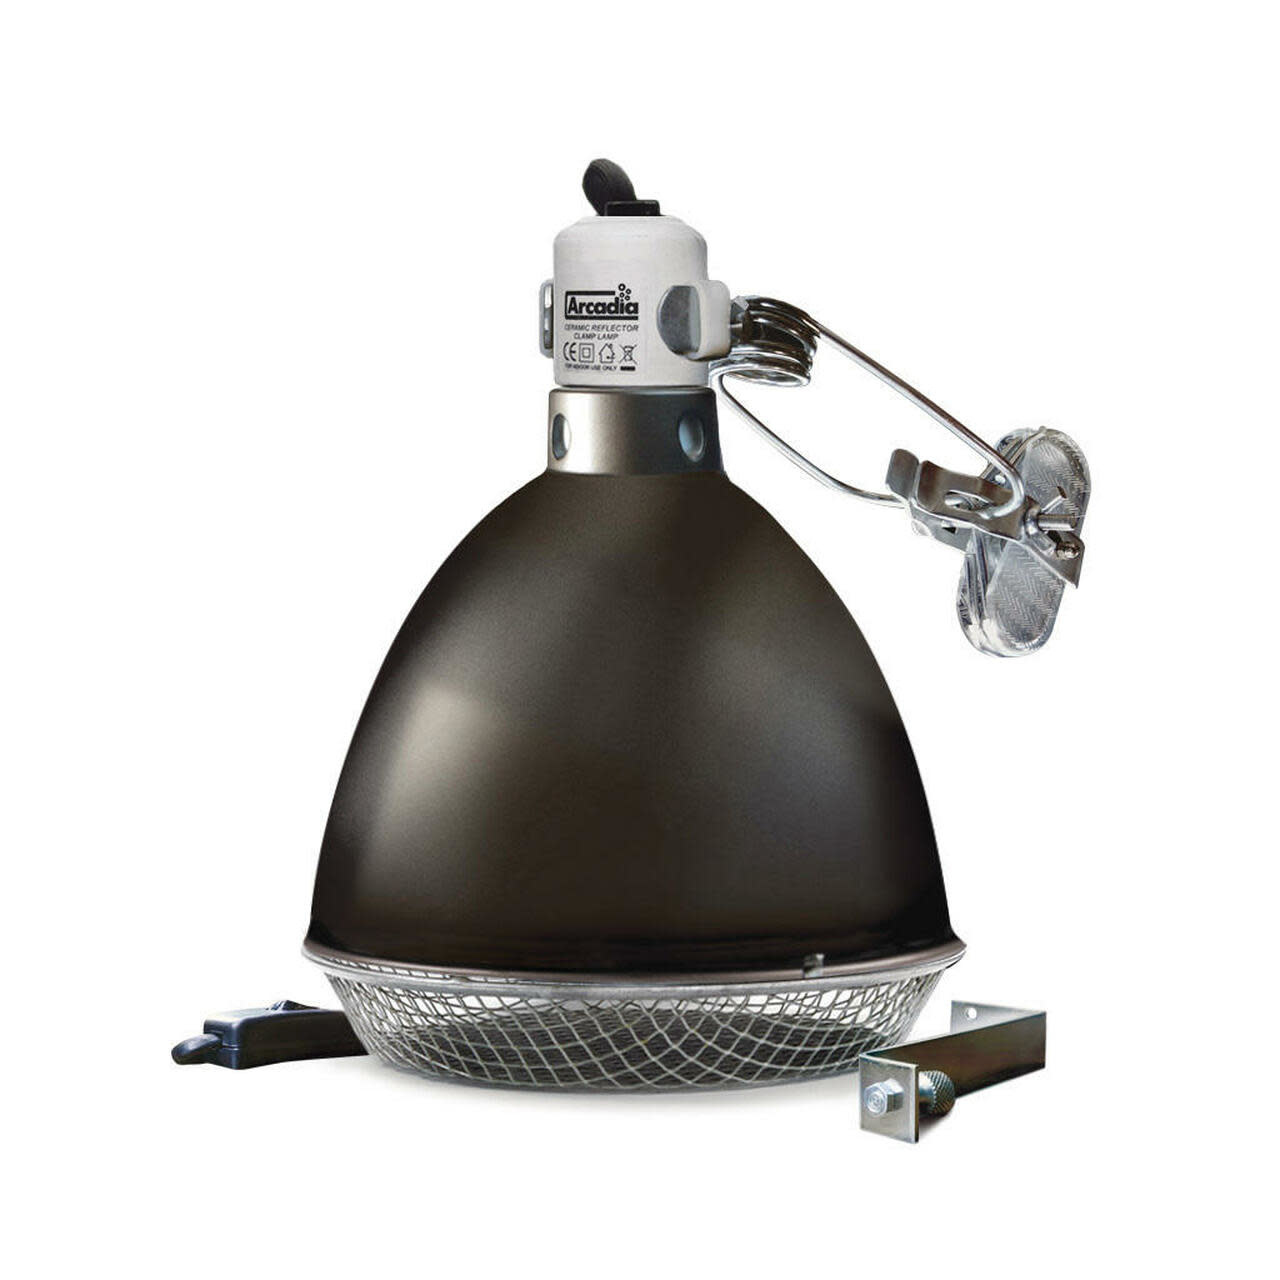 Arcadia "GRAPHITE" - Lampe à pince à réflecteur à dôme en céramique "GRAPHITE" -  "GRAPHITE" - "GRAPHITE" Ceramic Dome Reflector Clamp Lamp